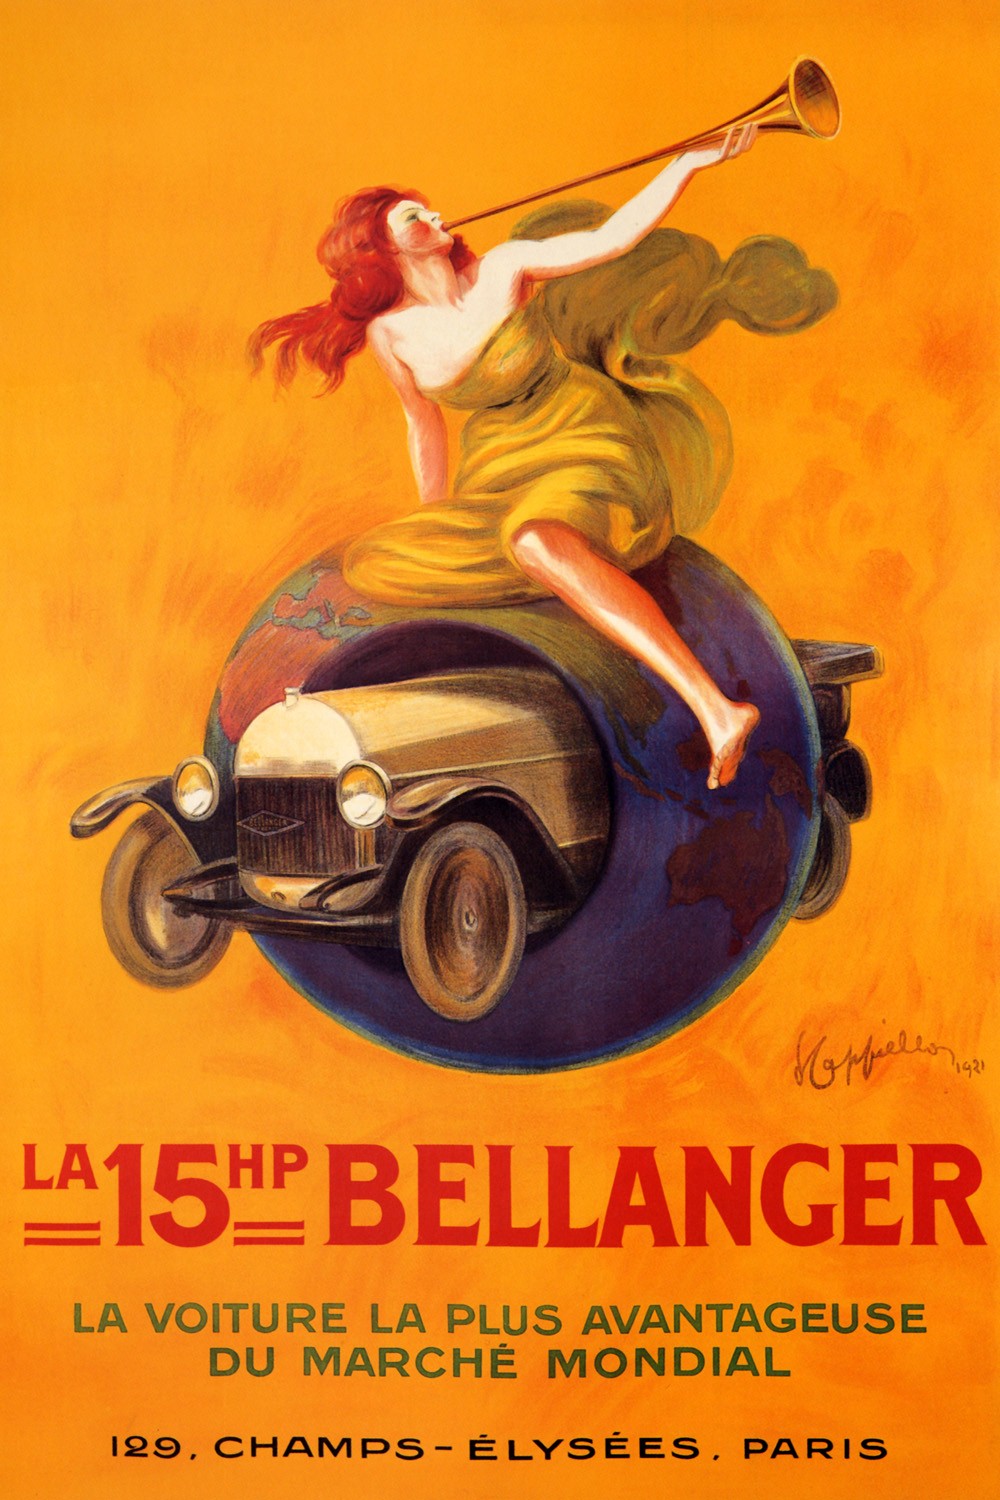 Foto 1 - Carro Automovel Bellanger Champs Elysees Paris de Cappiello Vintage Cartaz Poster em Papel Matte 